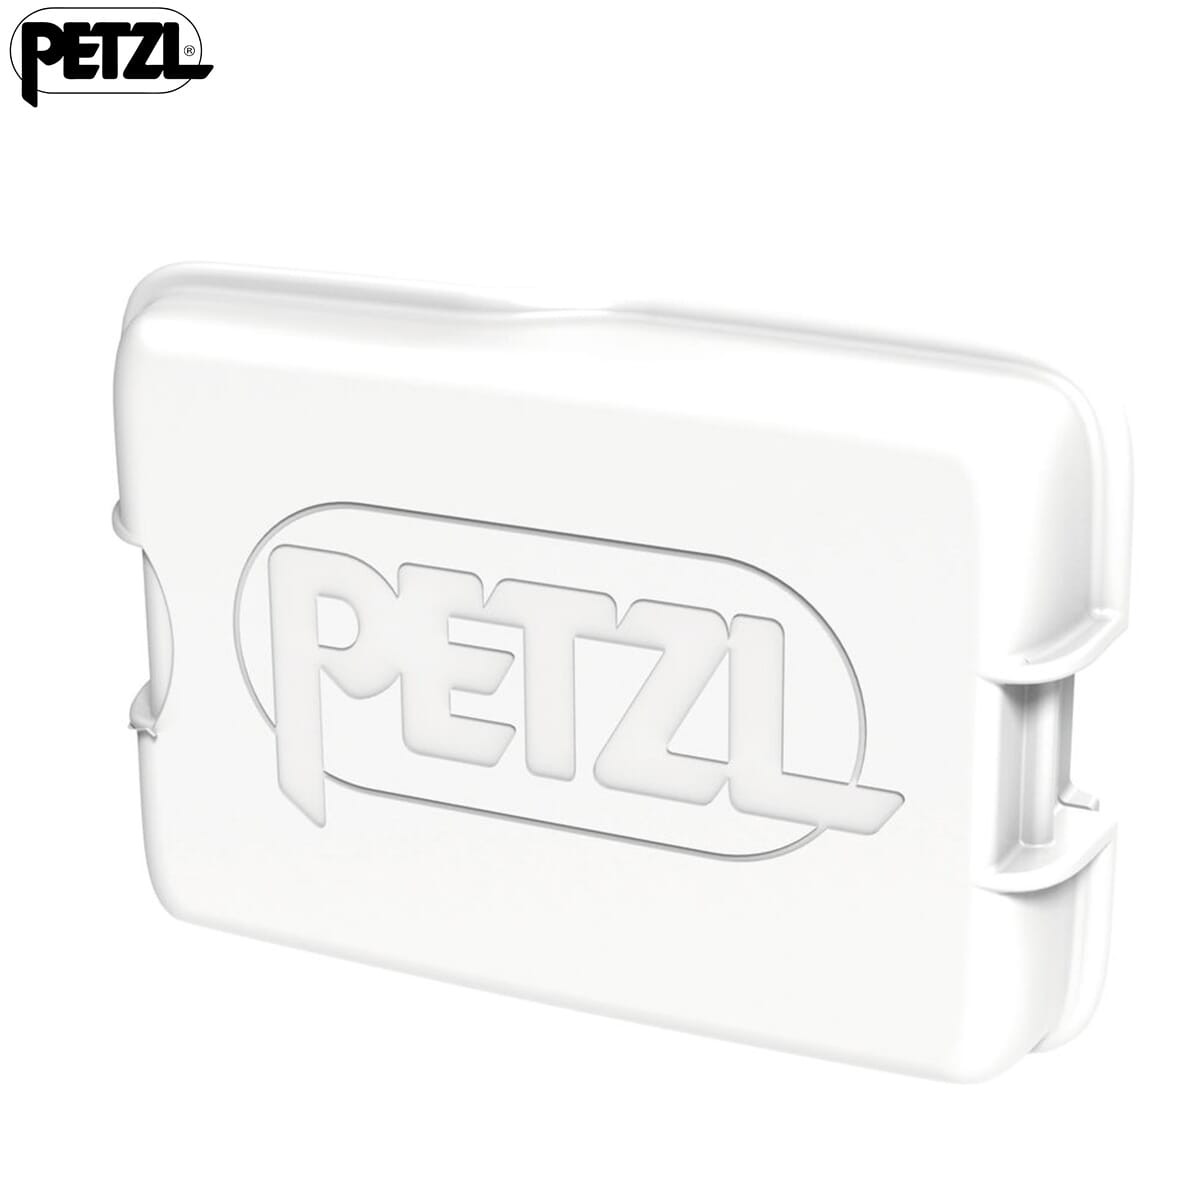 Petzl Swift RL Rechargable Battery for Swift RL Headlamp